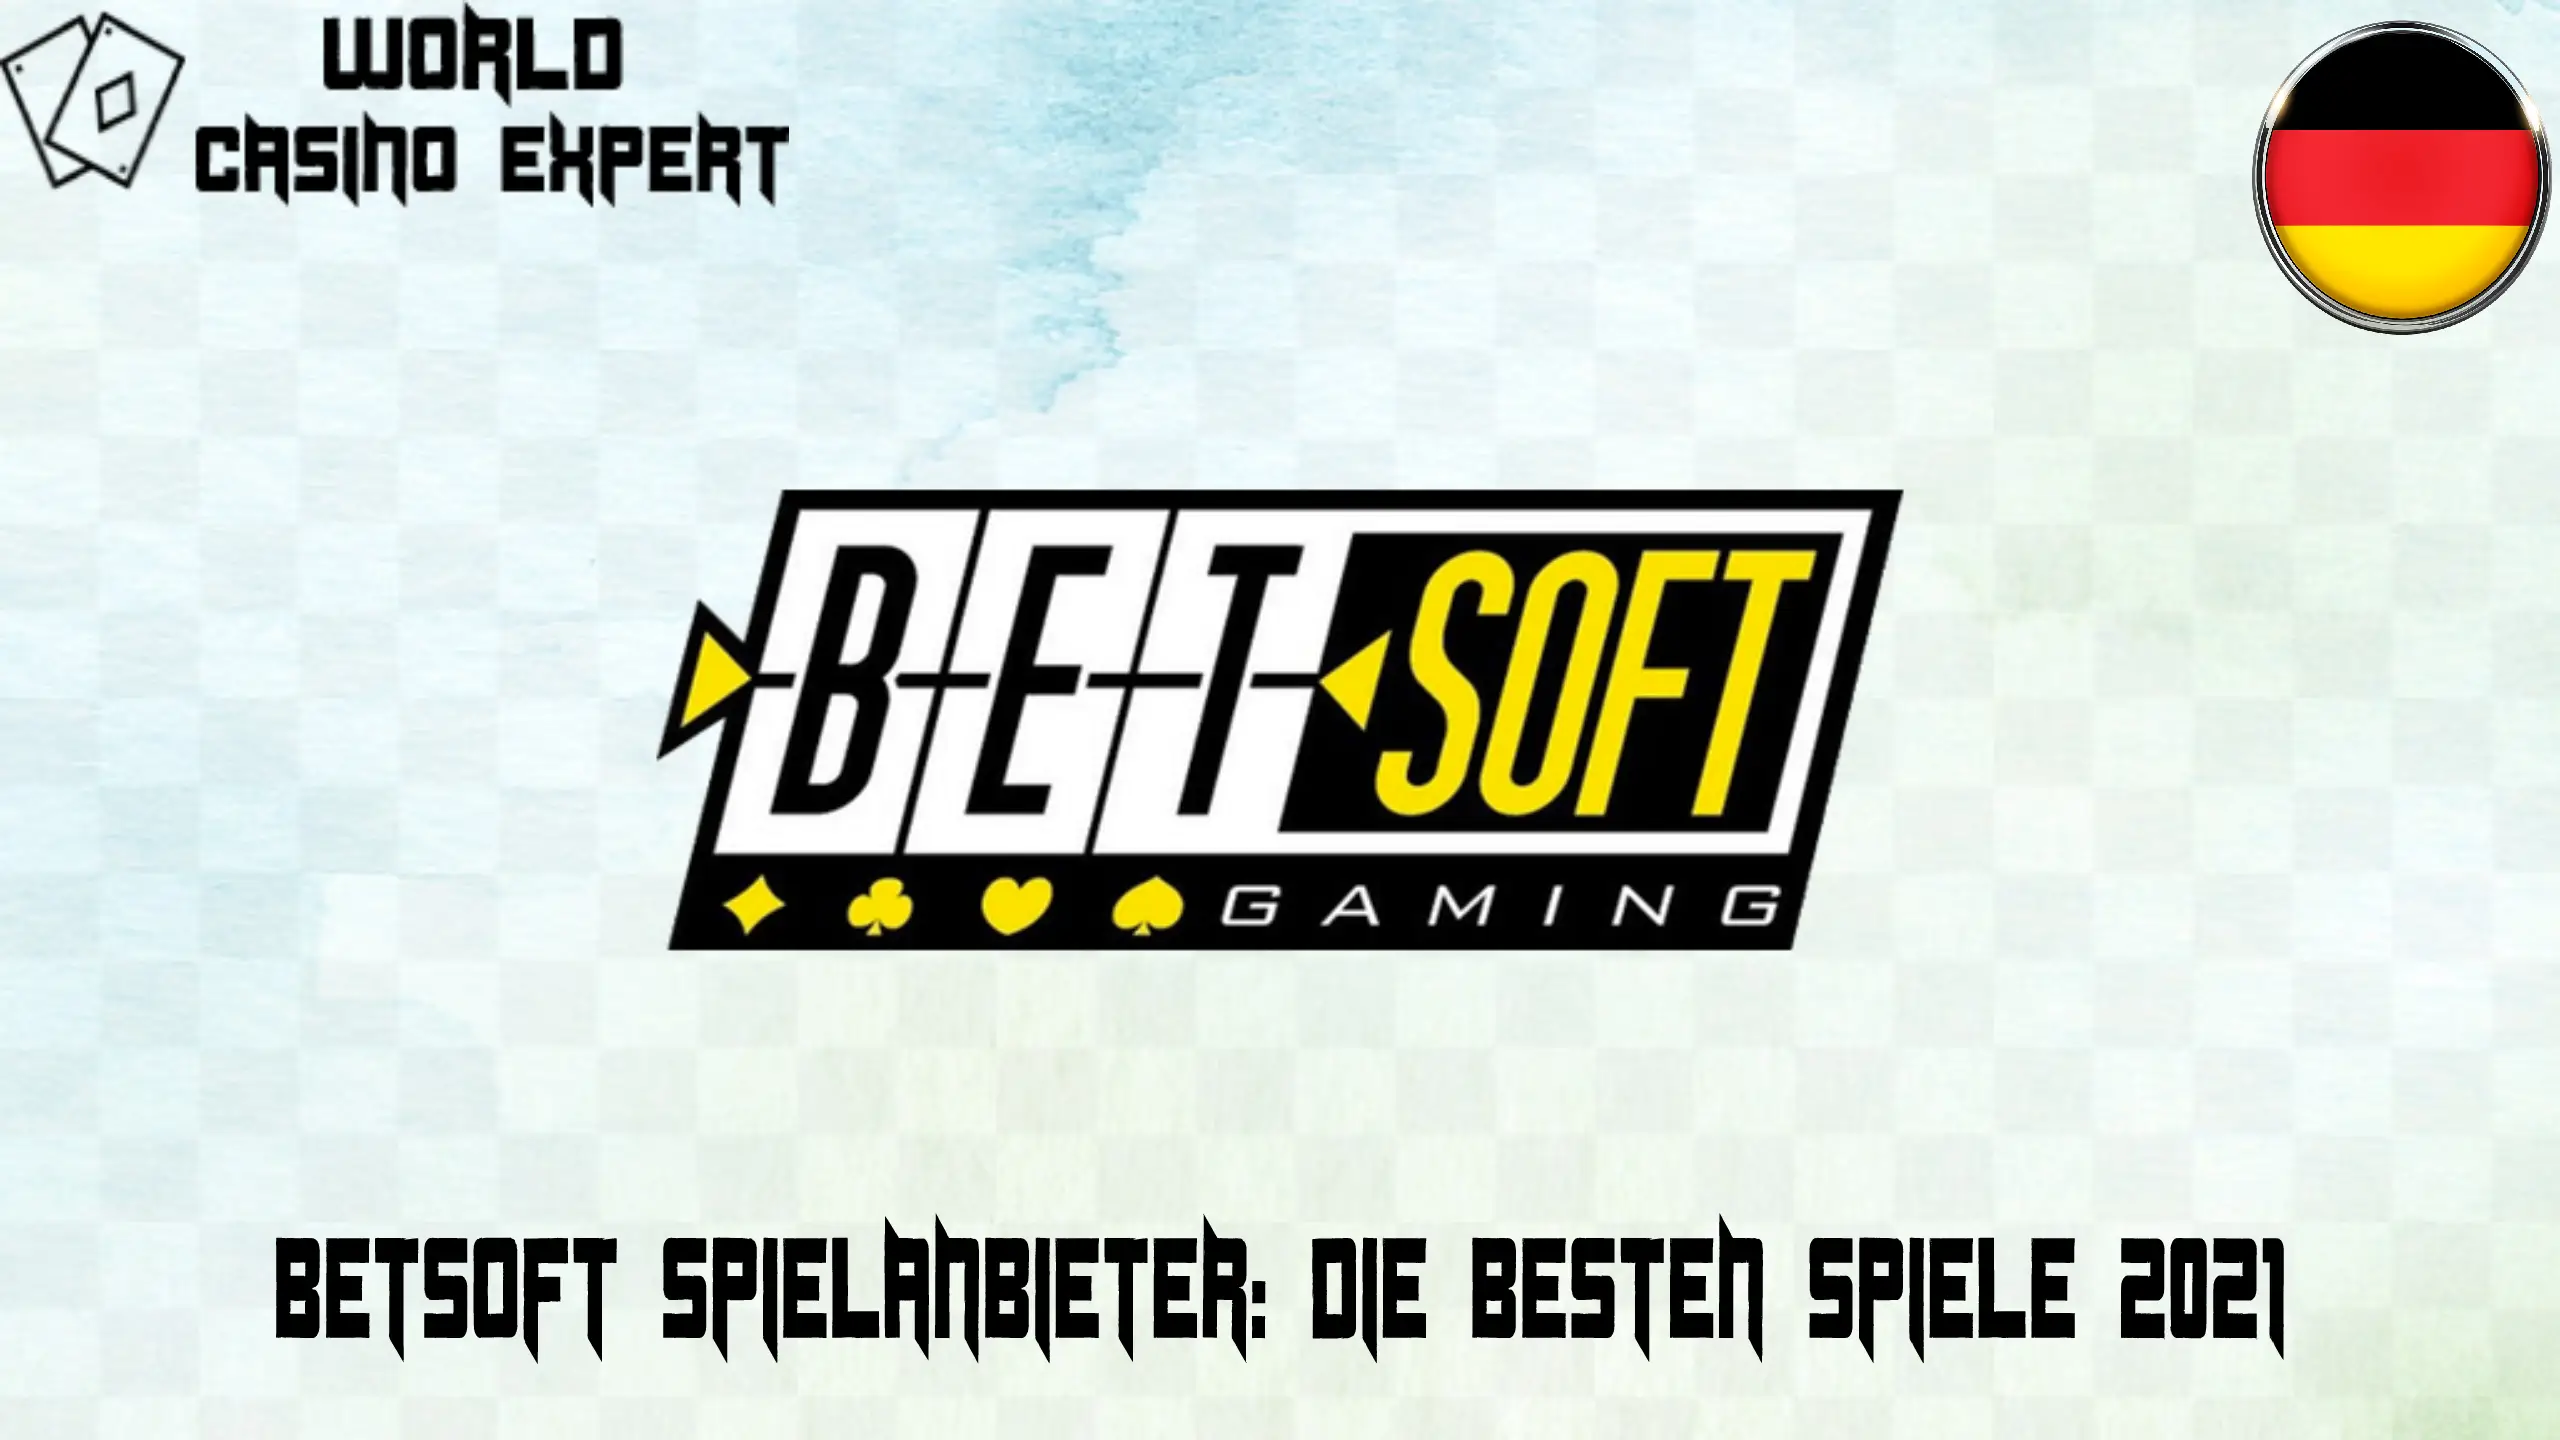 BetSoft Spielanbieter Die besten Spiele 2021 | World Casino Expert Deutschland 